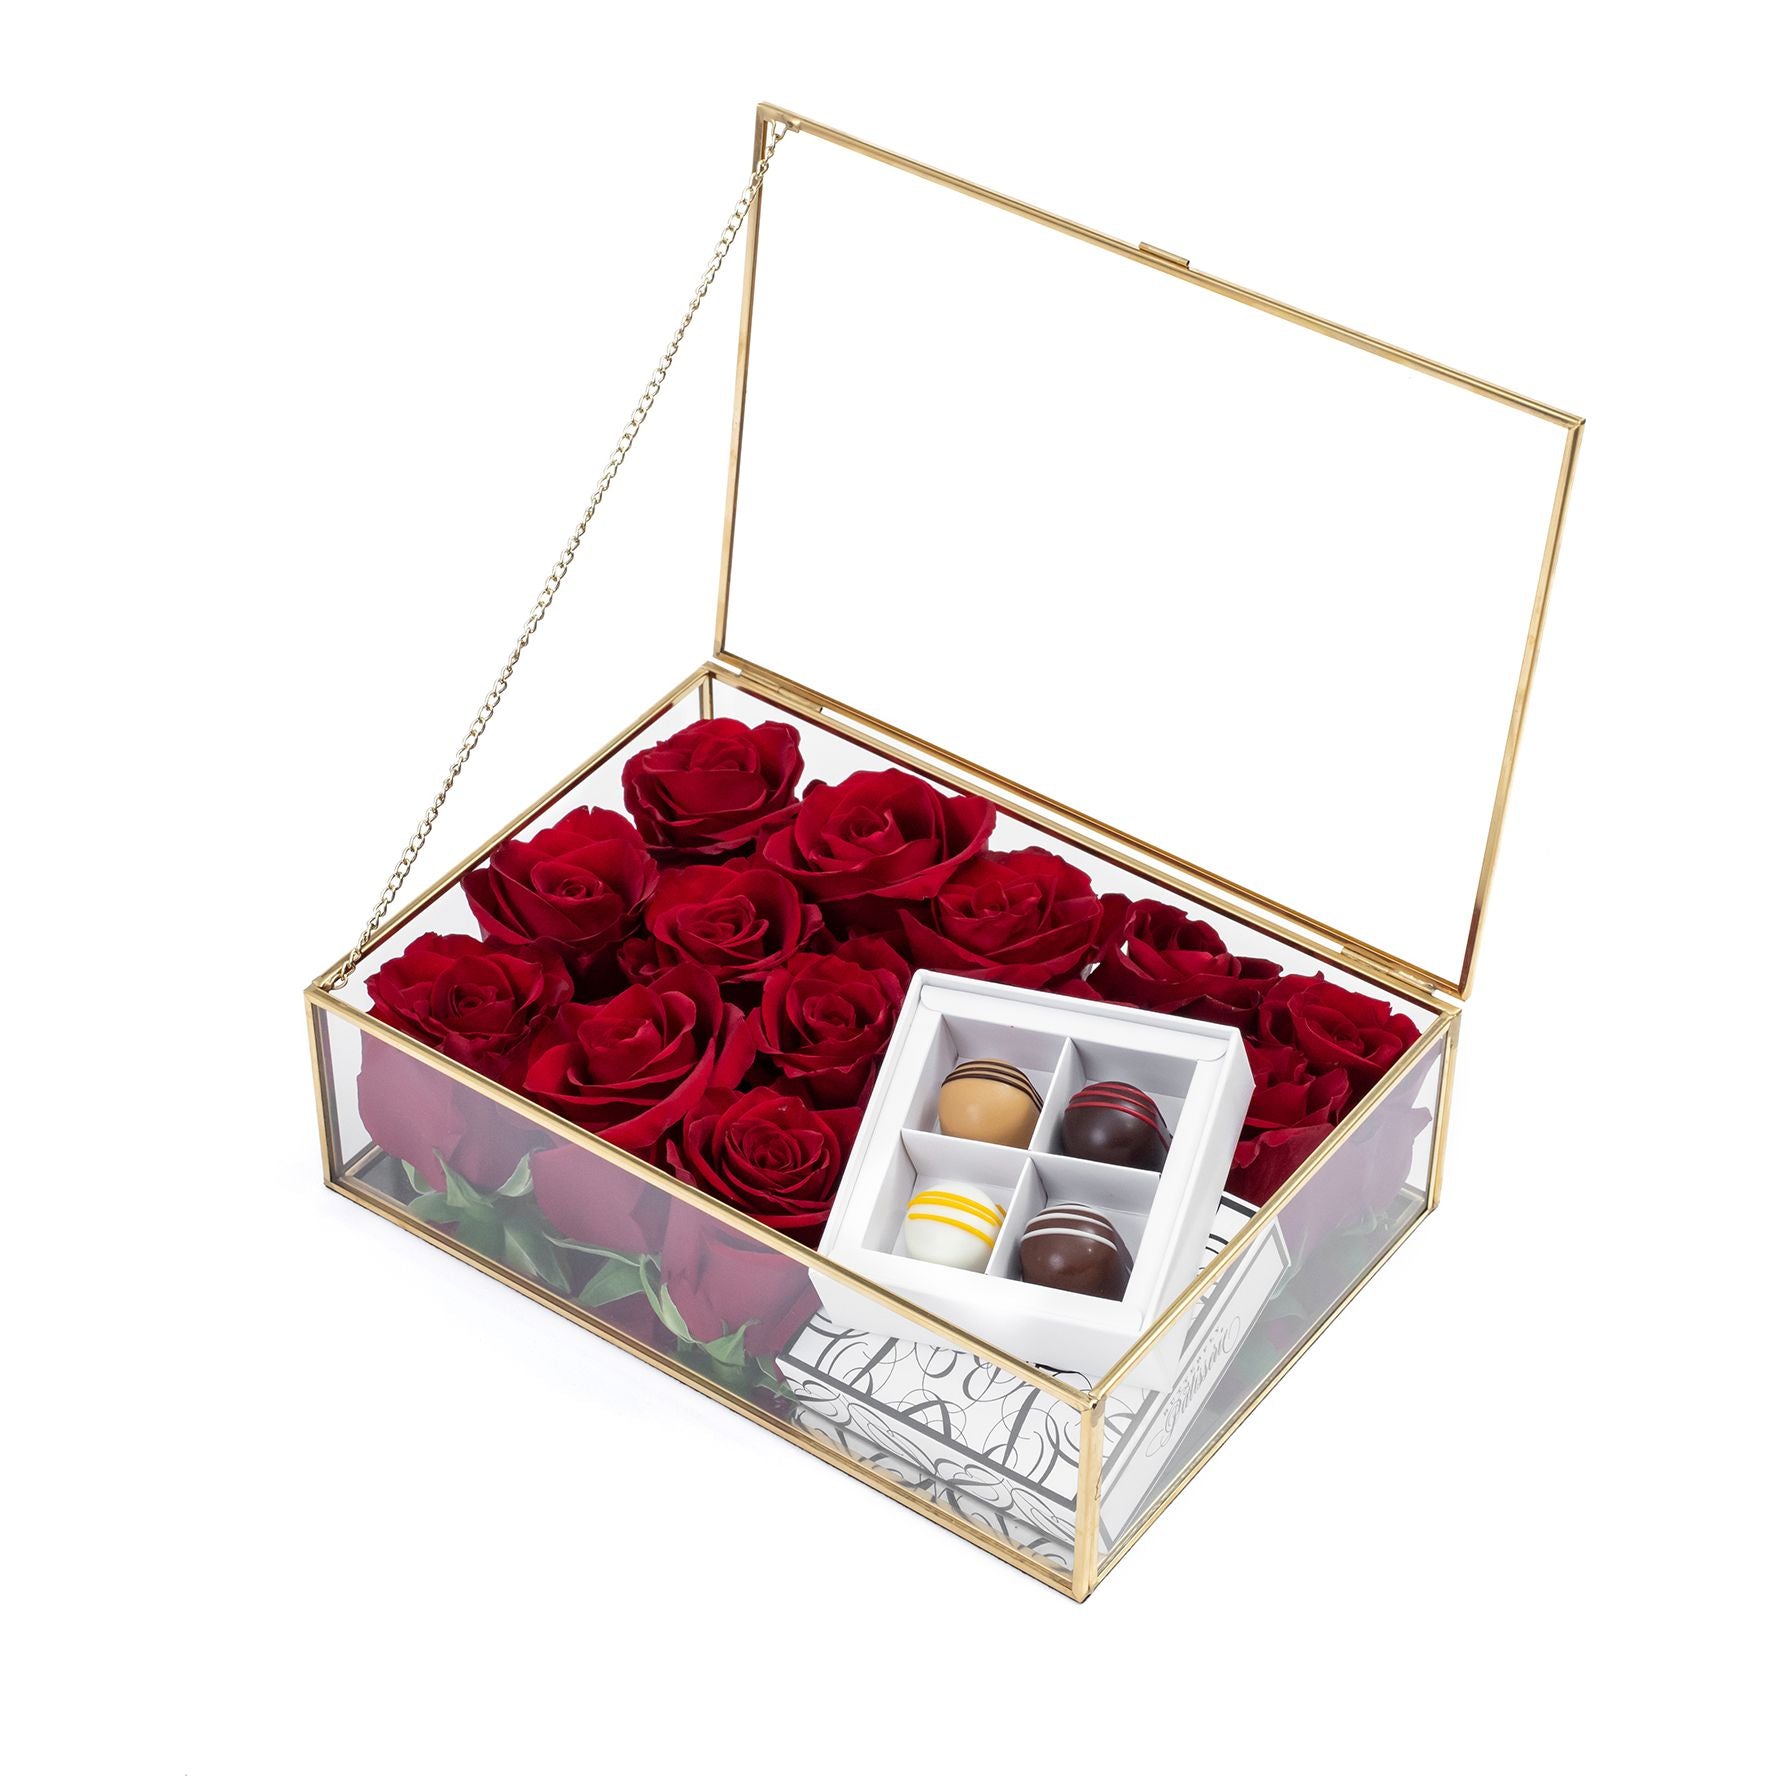 浪漫紅玫瑰玻璃禮盒連朱古力